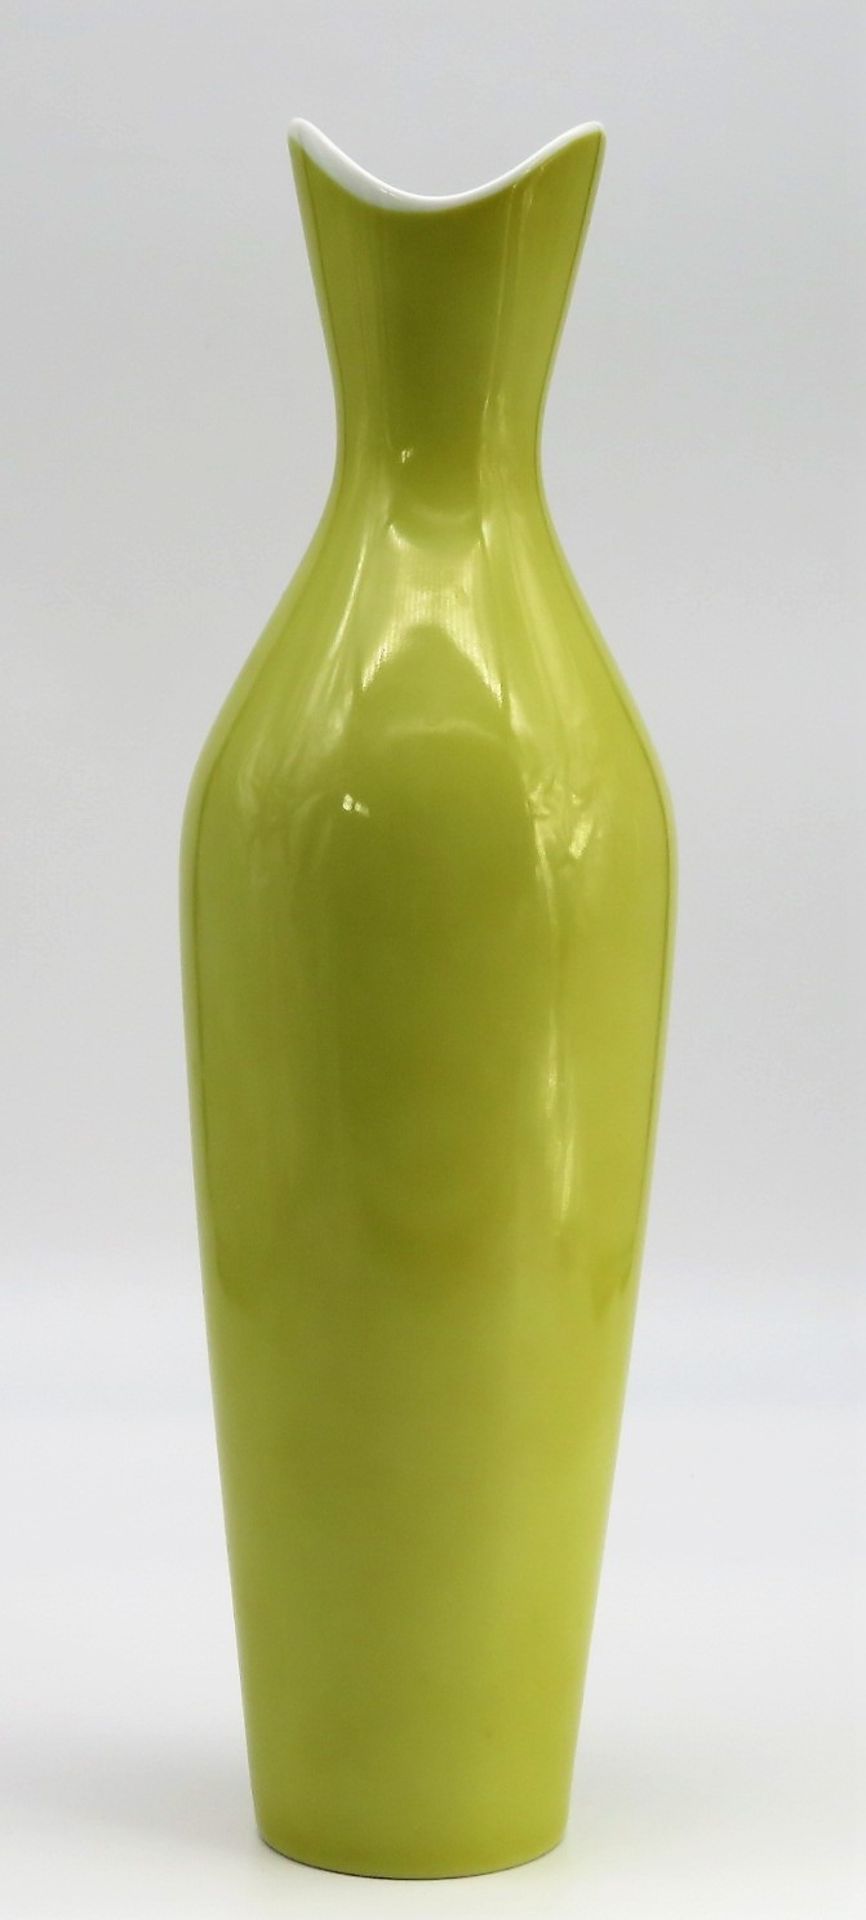 Designer Vase, Rosenthal, 1950er Jahre, Weißporzellan mit gelbem Überfang, schlanke, leicht gebauch